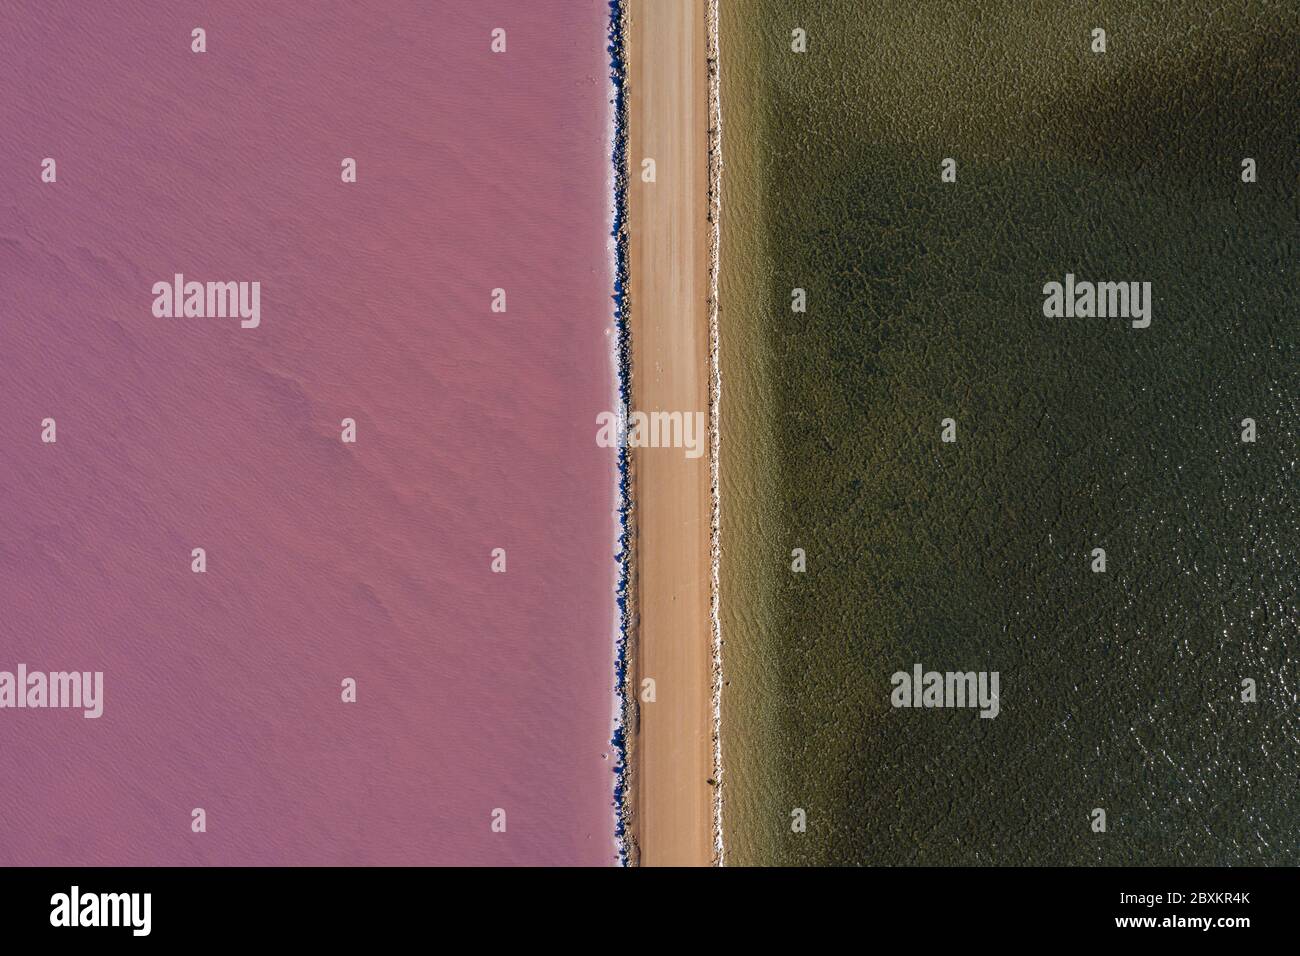 Vue aérienne du lac MacDonnell, un lac naturel de sel rose situé près de Penong en Australie méridionale Banque D'Images